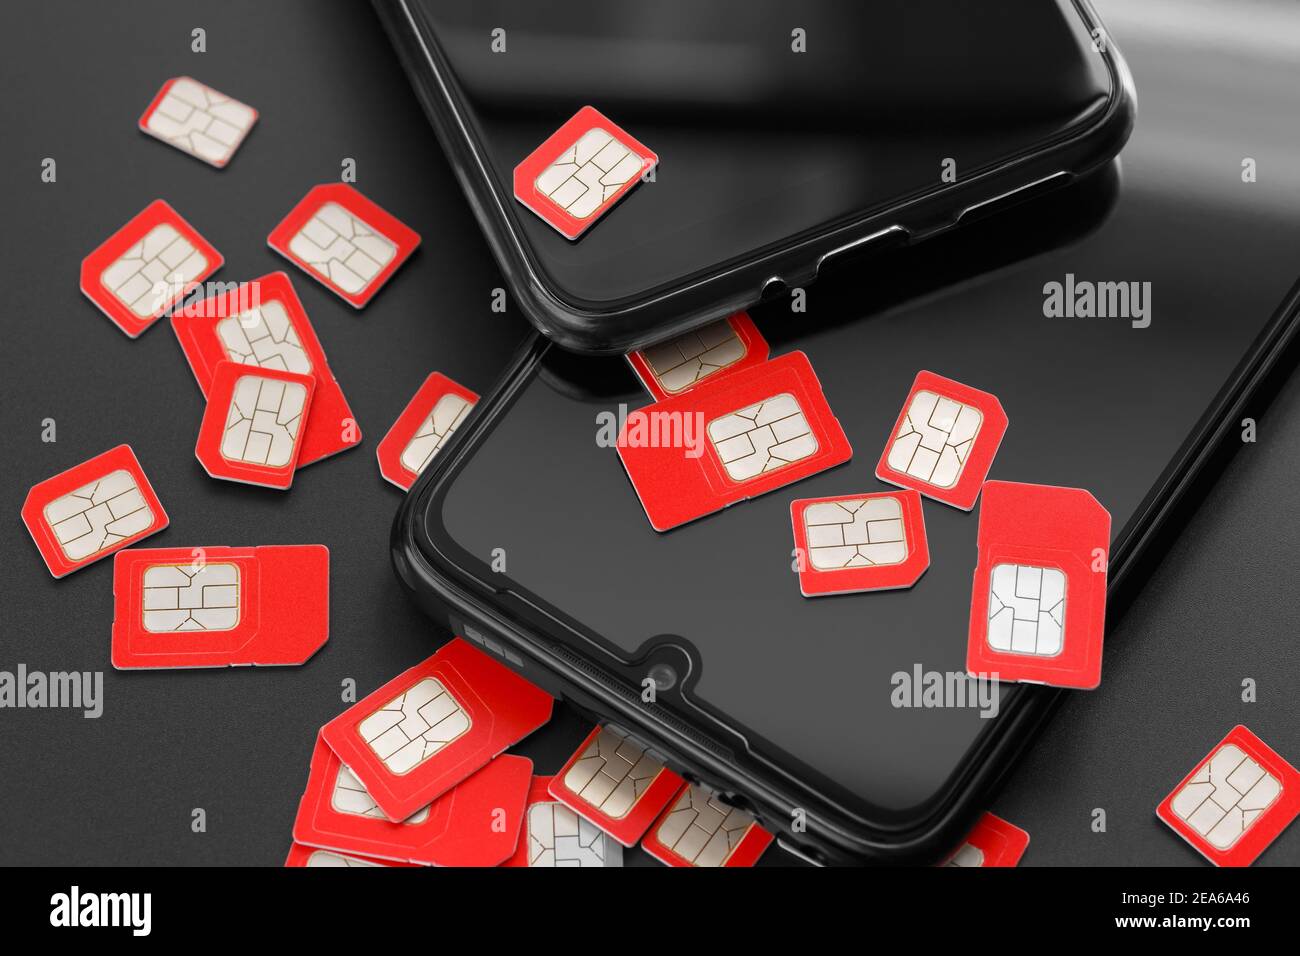 Dos teléfonos celulares y muchas tarjetas SIM. El concepto de fraude, engaño, marcado masivo. Foto de stock